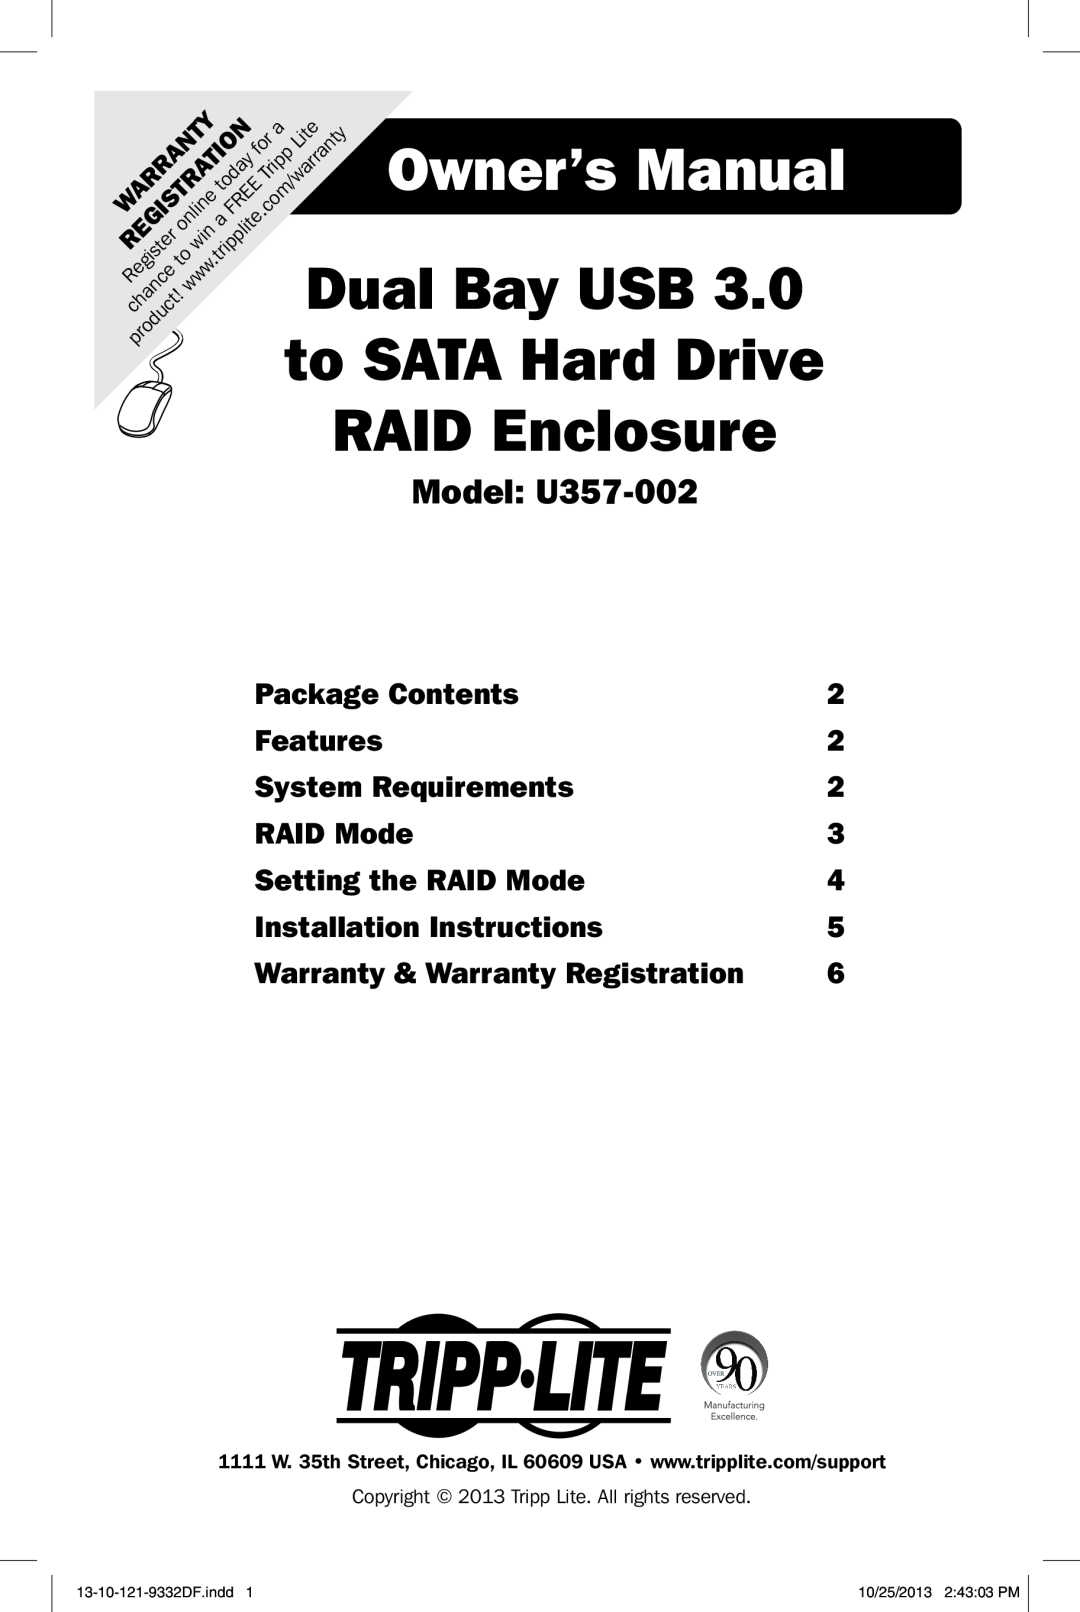 Tripp Lite owner manual Owner’s Manual, Dual Bay USB, to SATA Hard Drive, RAID Enclosure, Model U357-002, Features 